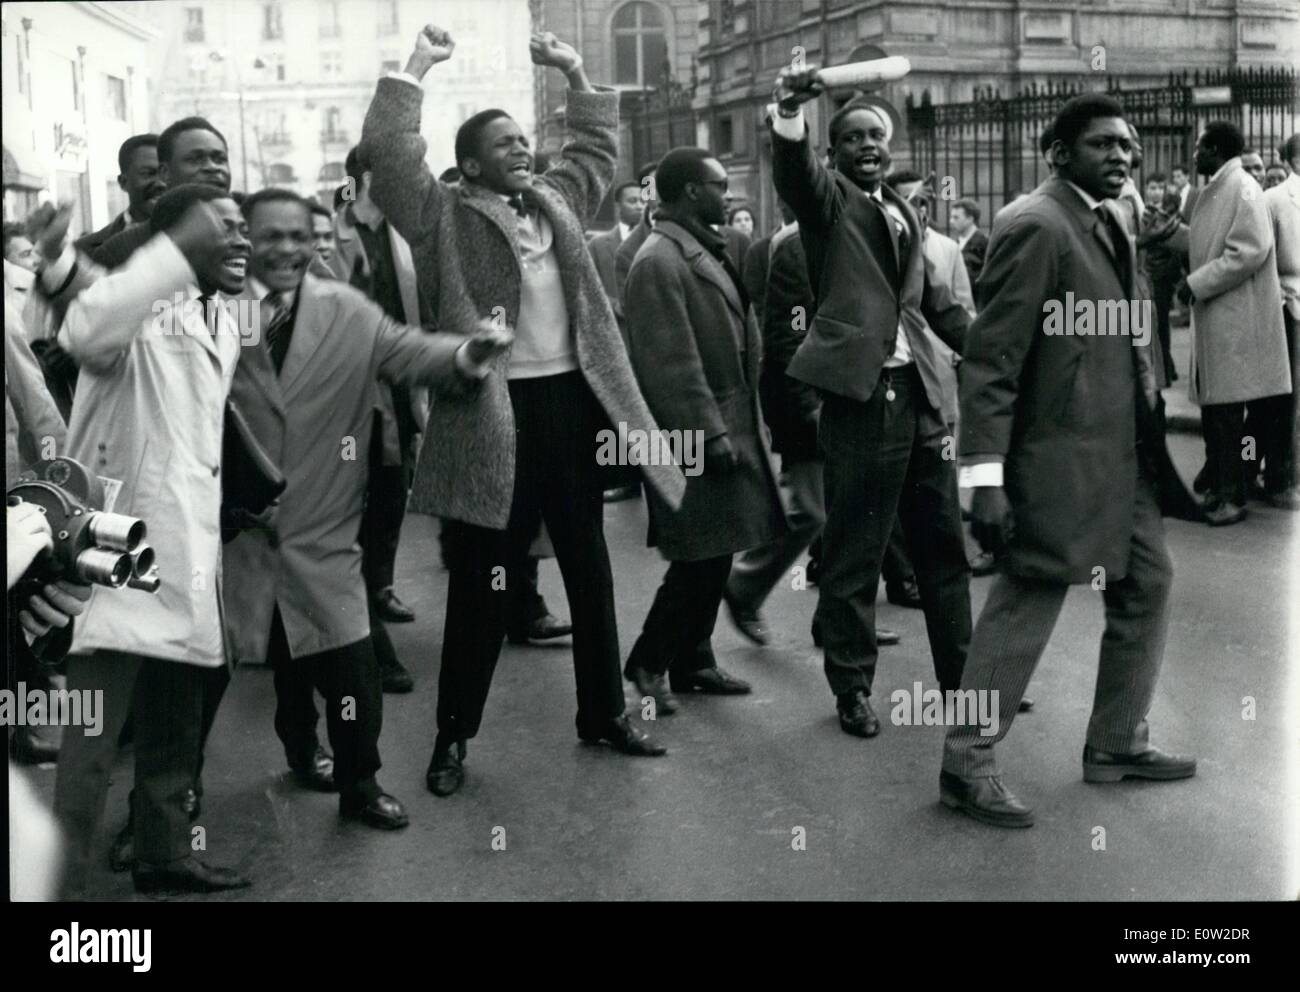 02 février 1961 - des étudiants noirs manifestent contre les bidonvilles de Lumumba: Des étudiants ethniques avec Un groupe de gauchistes blancs ont manifesté devant l'ambassade de Belgique à Paris cet après-midi.Des photos montrent des manifestants en branlant des armes et en criant des slogans anti-belges. Banque D'Images